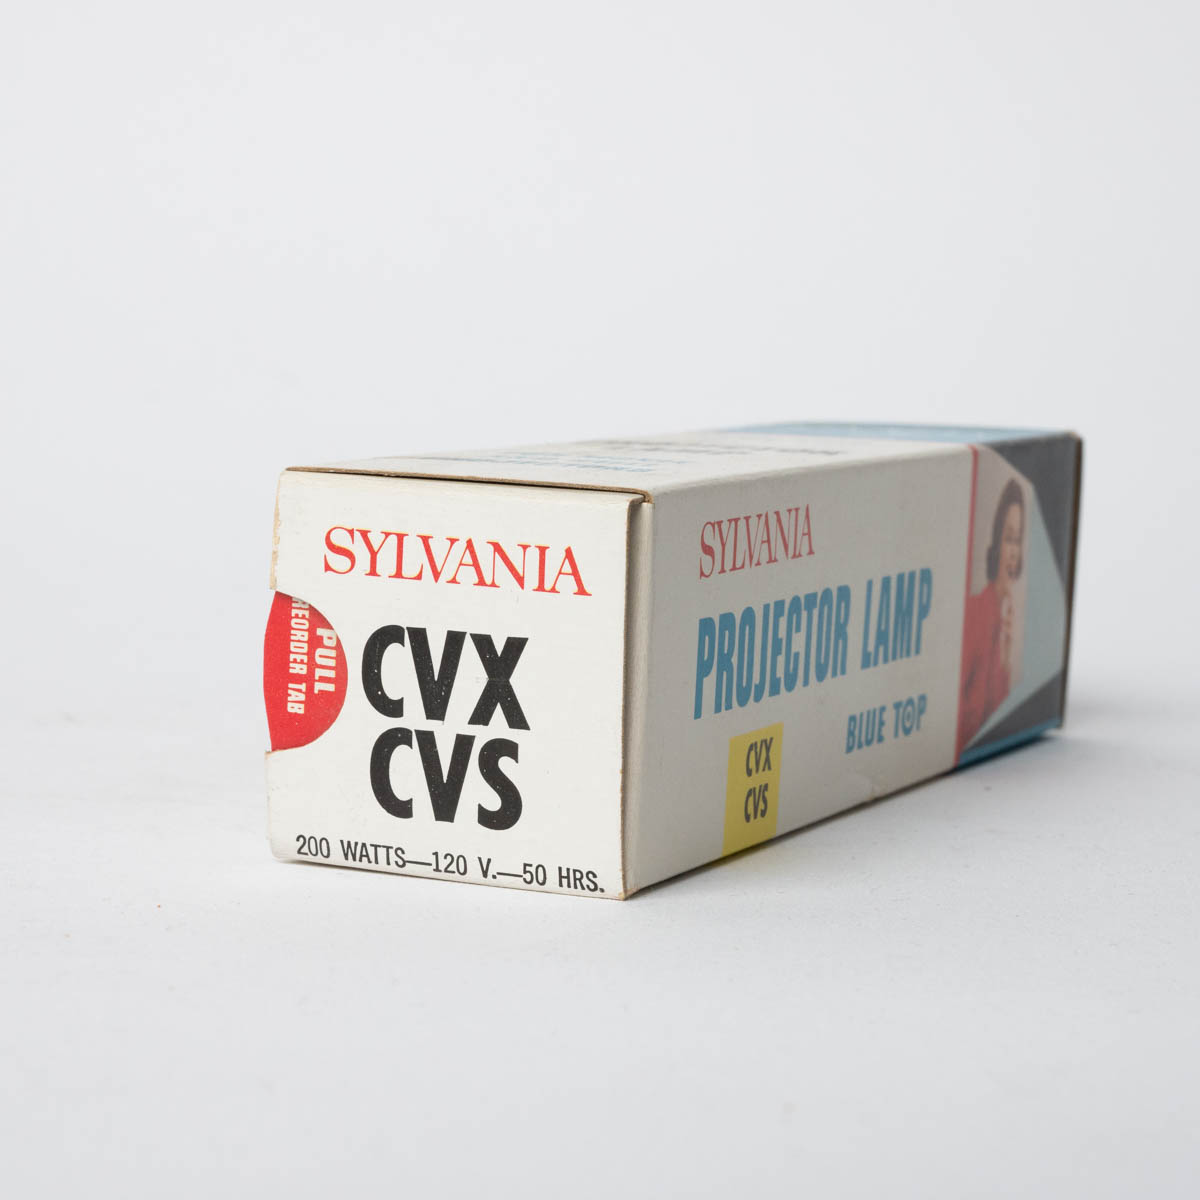 projector Lamp CVX/CVS